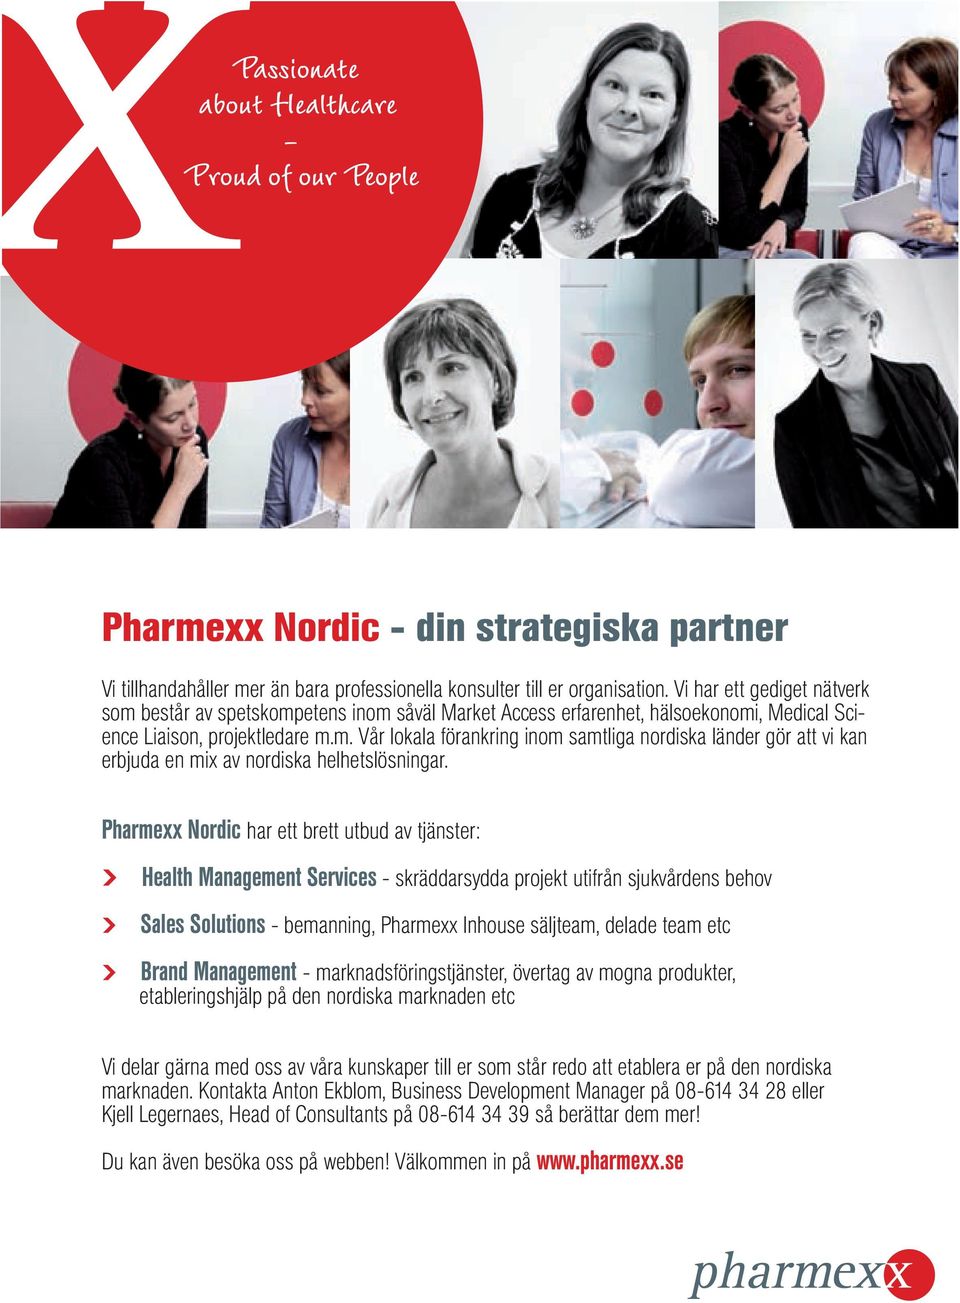 Pharmexx Nordic har ett brett utbud av tjänster: Health Management Services - skräddarsydda projekt utifrån sjukvårdens behov Sales Solutions - bemanning, Pharmexx Inhouse säljteam, delade team etc